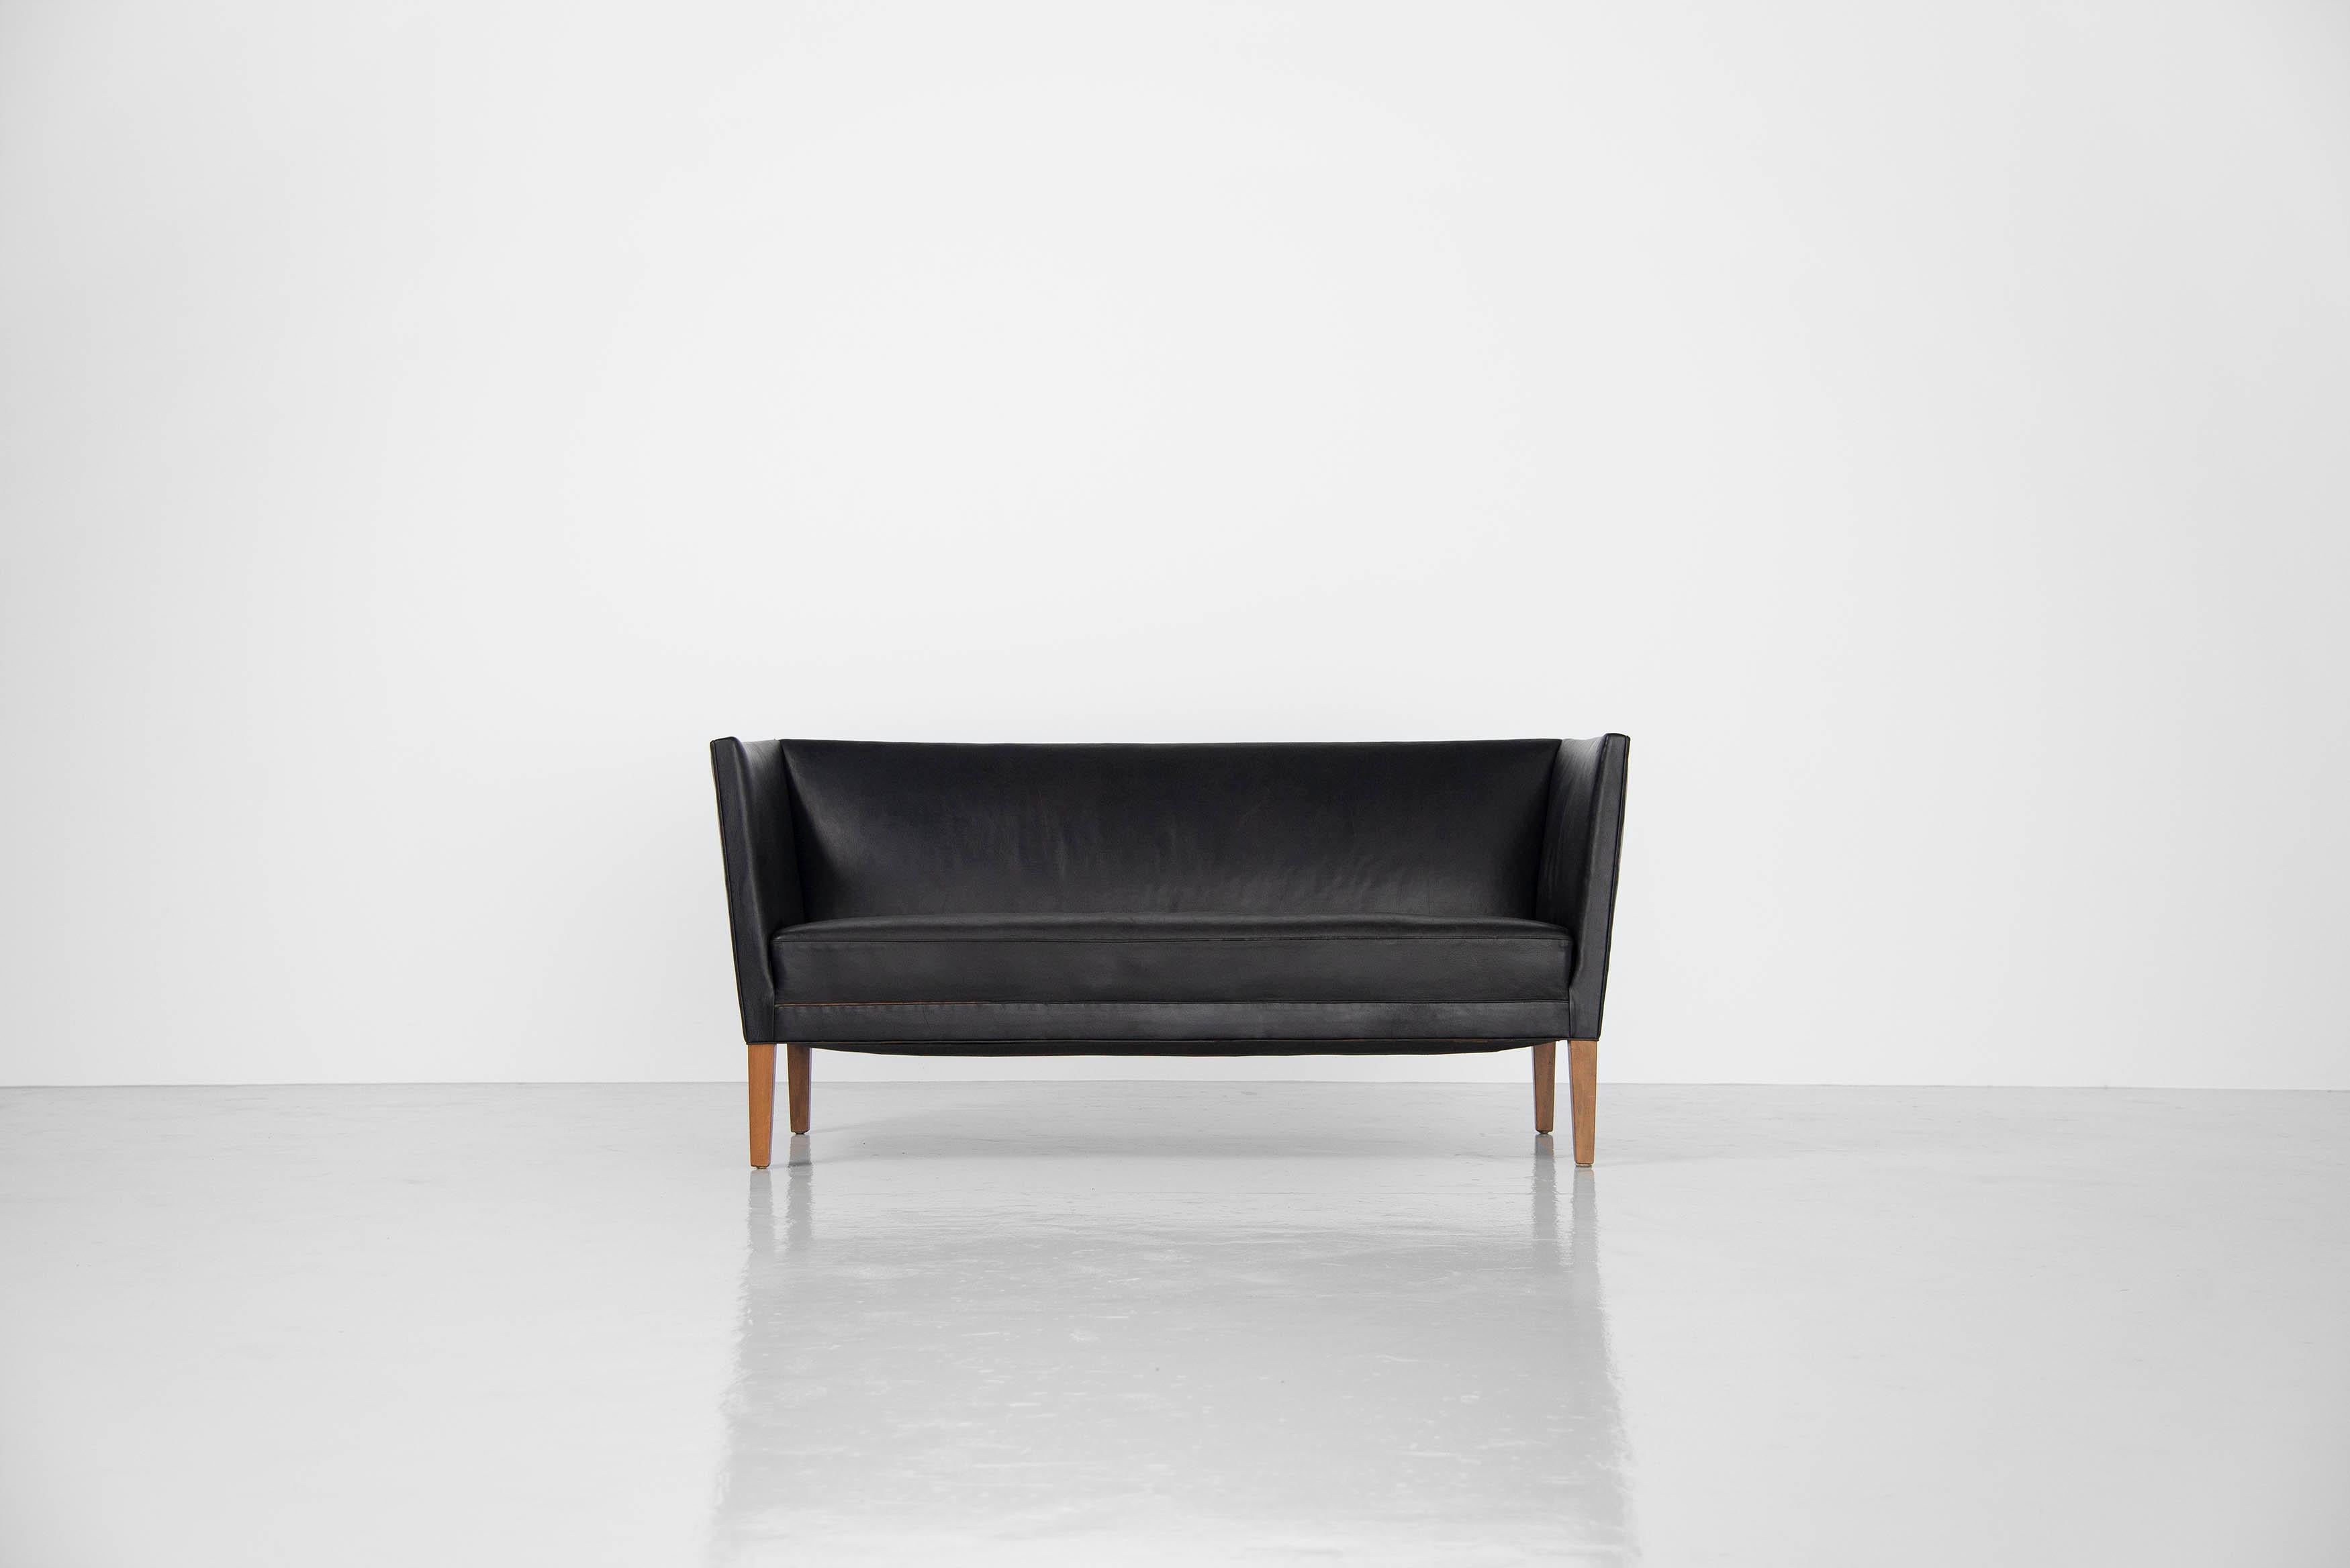 Schönes kleines dänisches Sofa oder Liebessitz, Modell JH180, entworfen von Grete Jalk und hergestellt von Johannes Hansen, Dänemark 1955. Dieses schöne geformte Sofa hat sehr schöne und subtile Linien, es sieht nicht sehr speziell aus, aber es ist